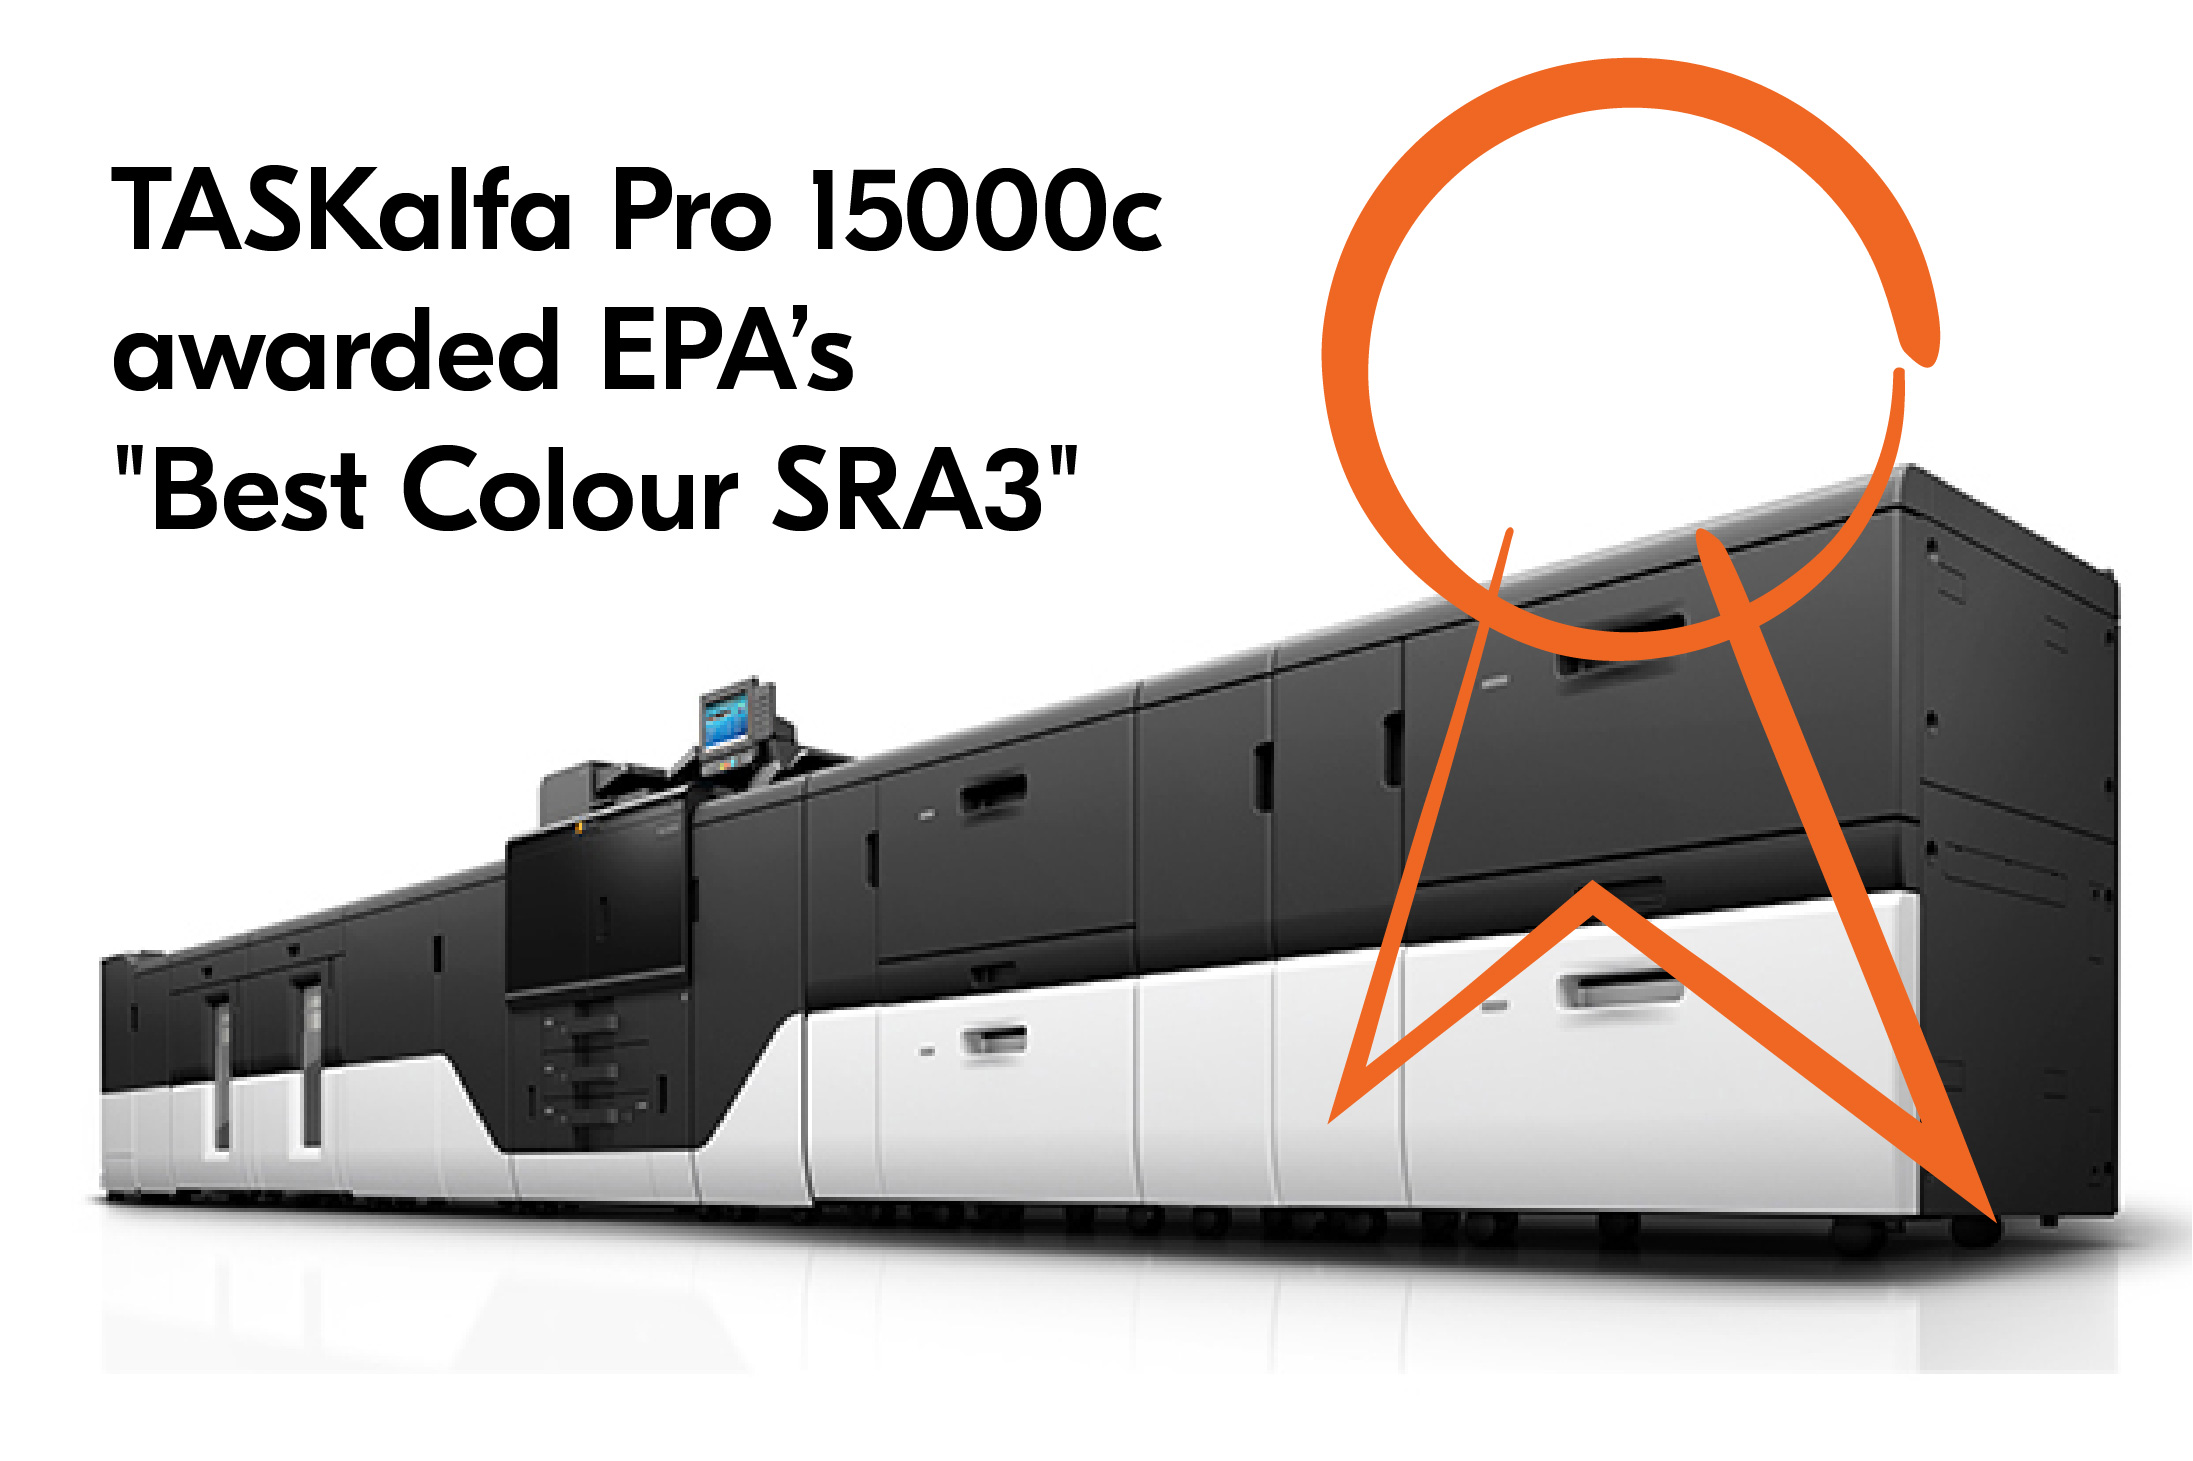 교세라 잉크젯 프로덕션 프린터 TASKalfa Pro 15000c, EDP Best Colour SRA3 어워드 수상